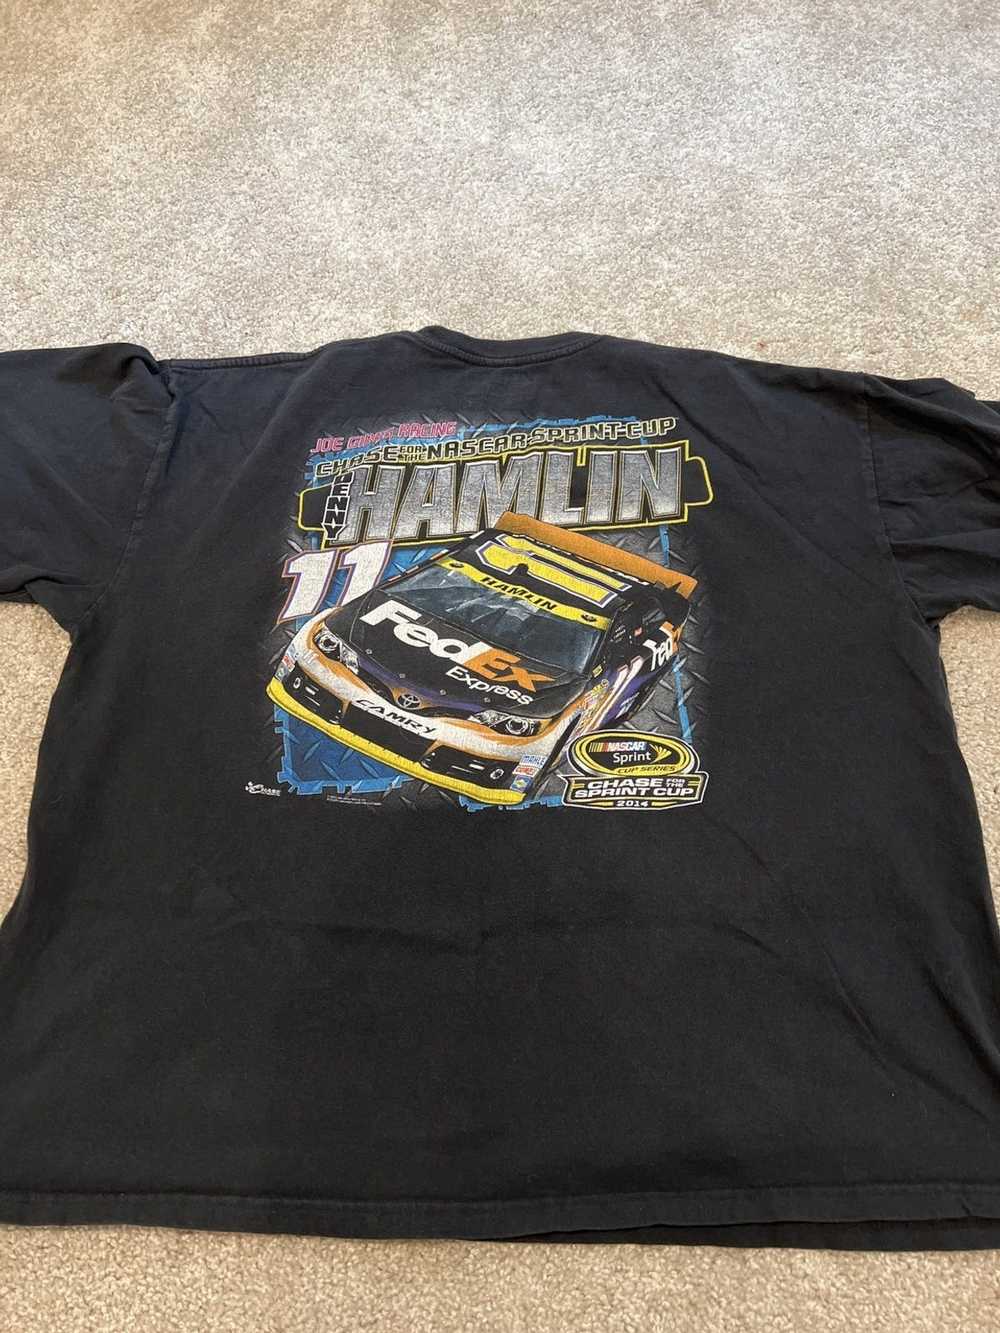 NASCAR × Vintage Vintage NASCAR t-shirt - image 3